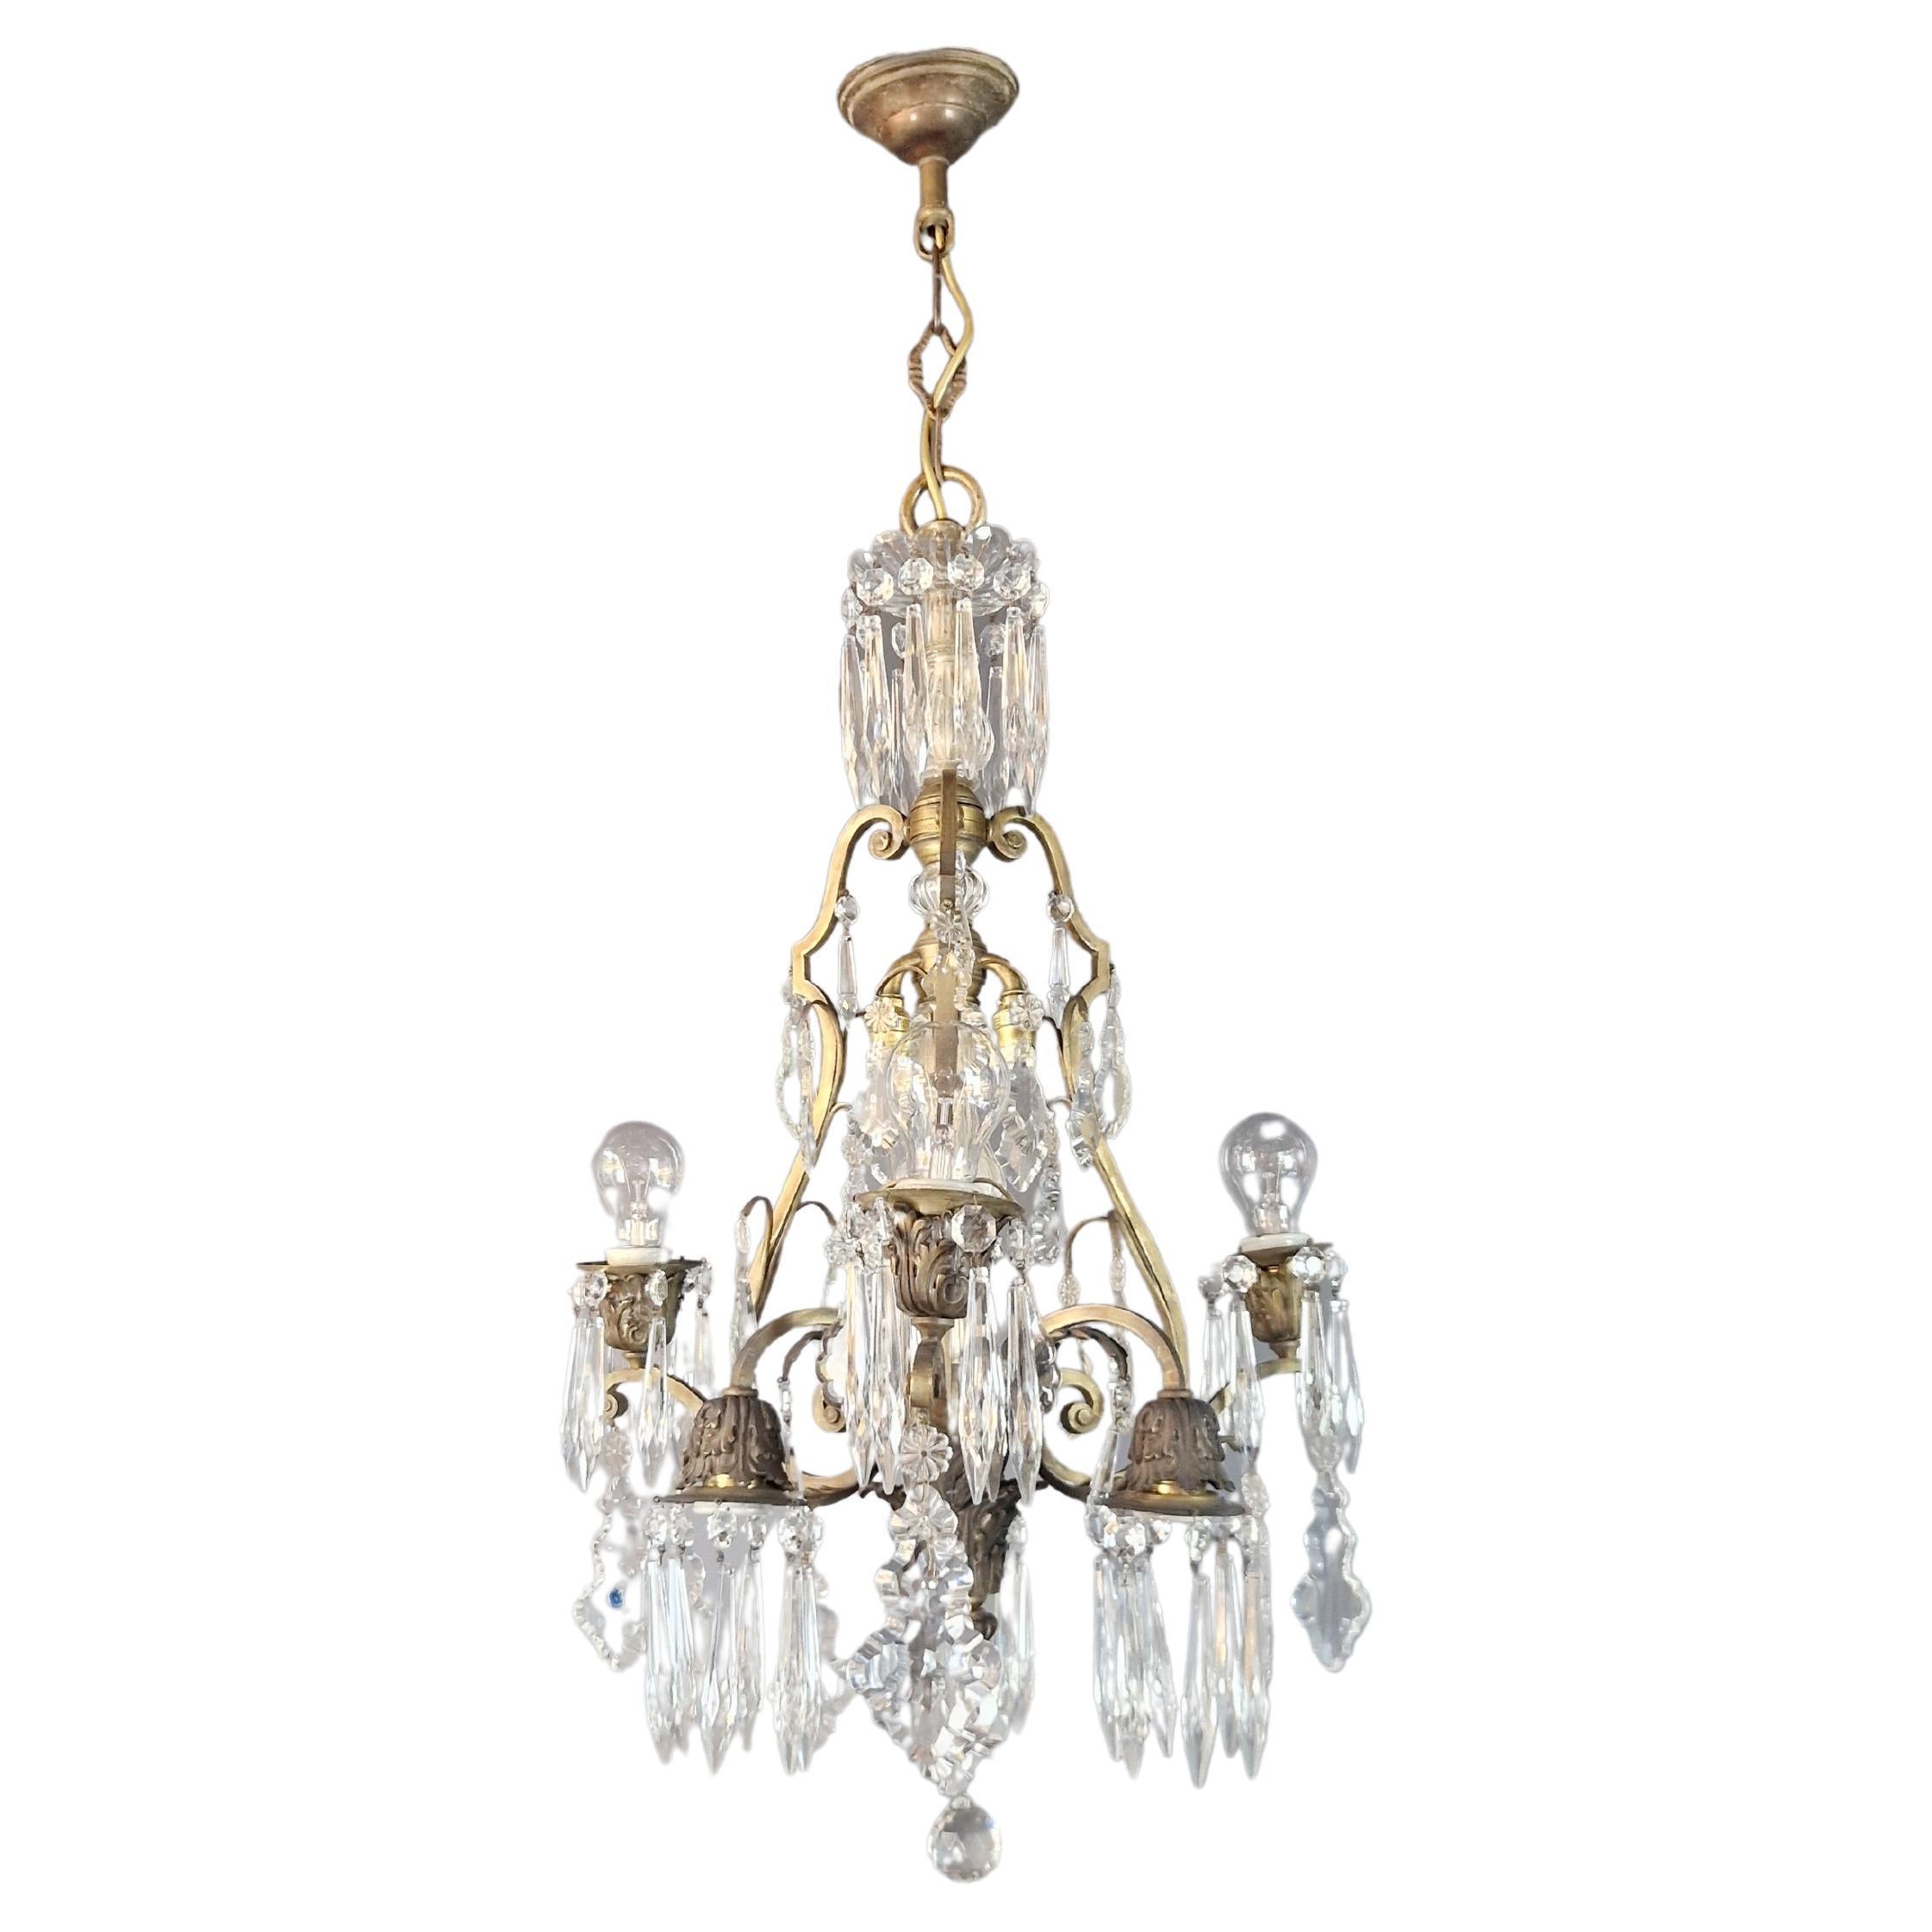 Brass Crystal Chandelier Antique Ceiling Lamp Lustre Art Nouveau and Art Deco For Sale